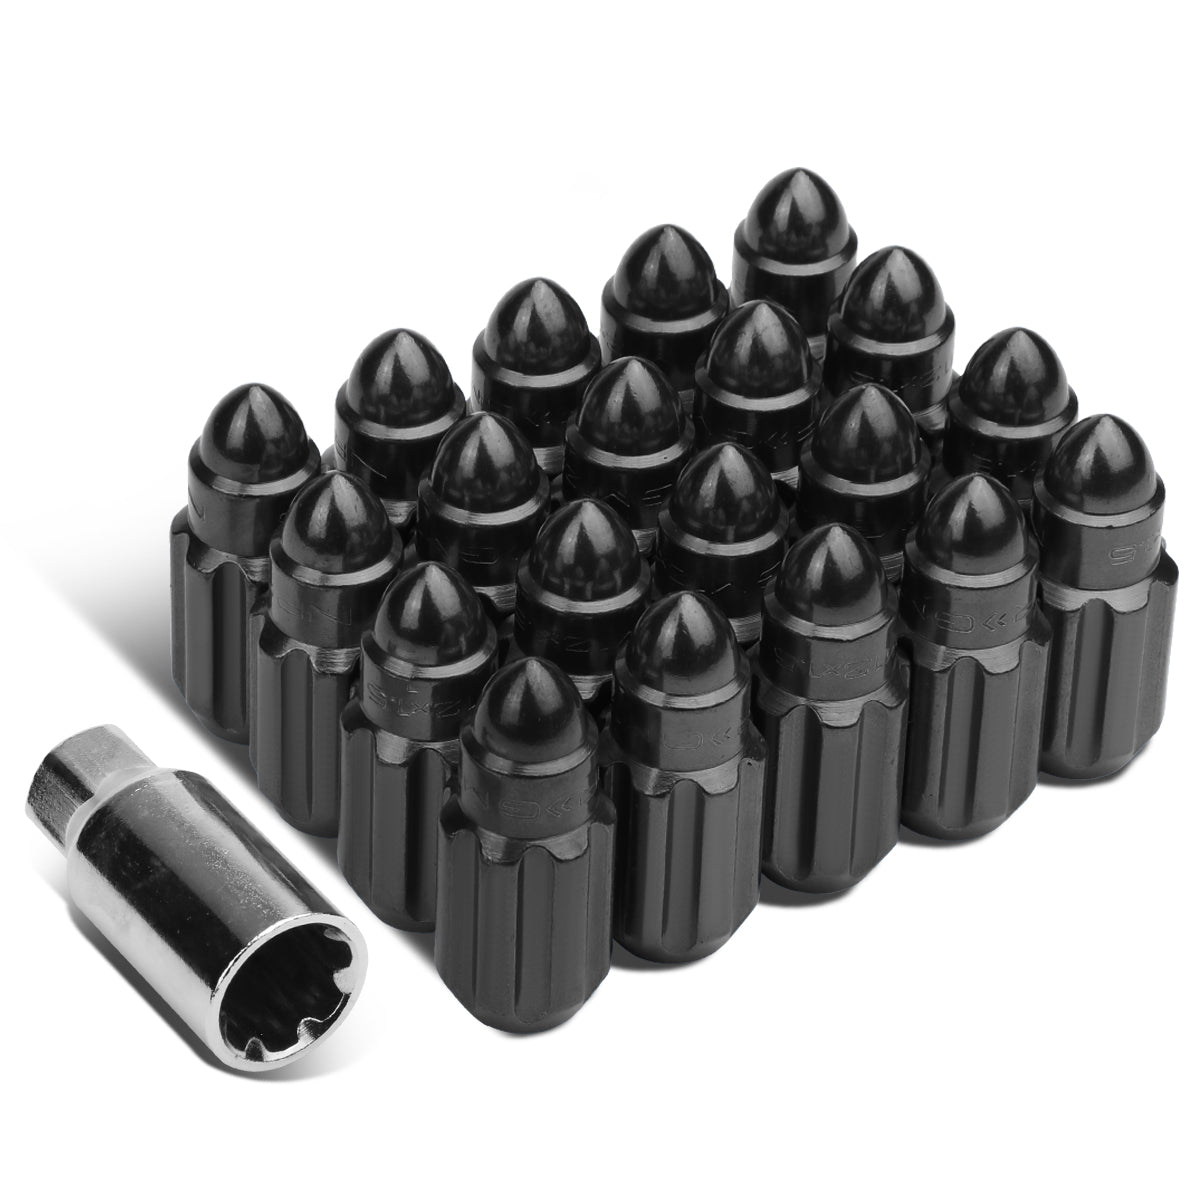 NRG Innovations 500 Series "Steel" Lug Nut Bullet M12x1.25 Set 21 pc - 5 Lug Sets LN-LS510BK-21